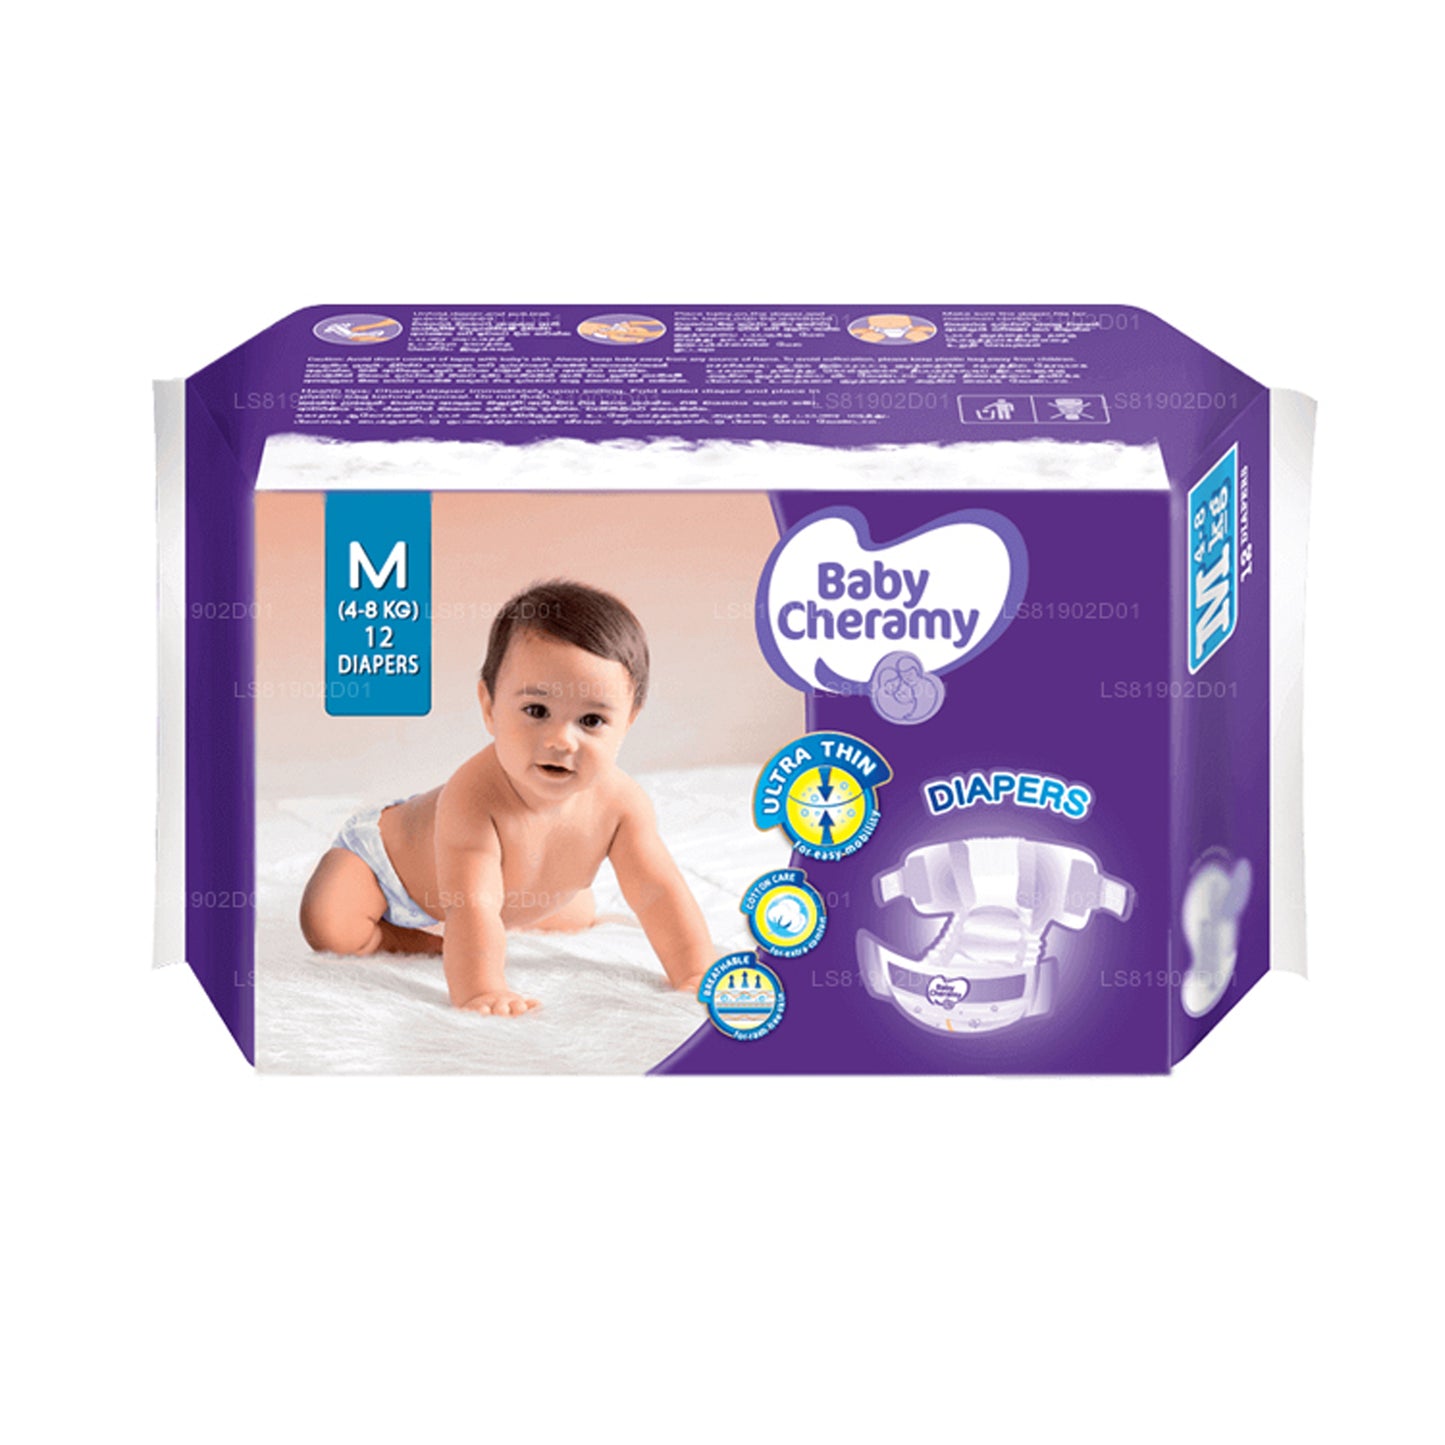 Baby Cheramy Baby Diapers (12 Pack)